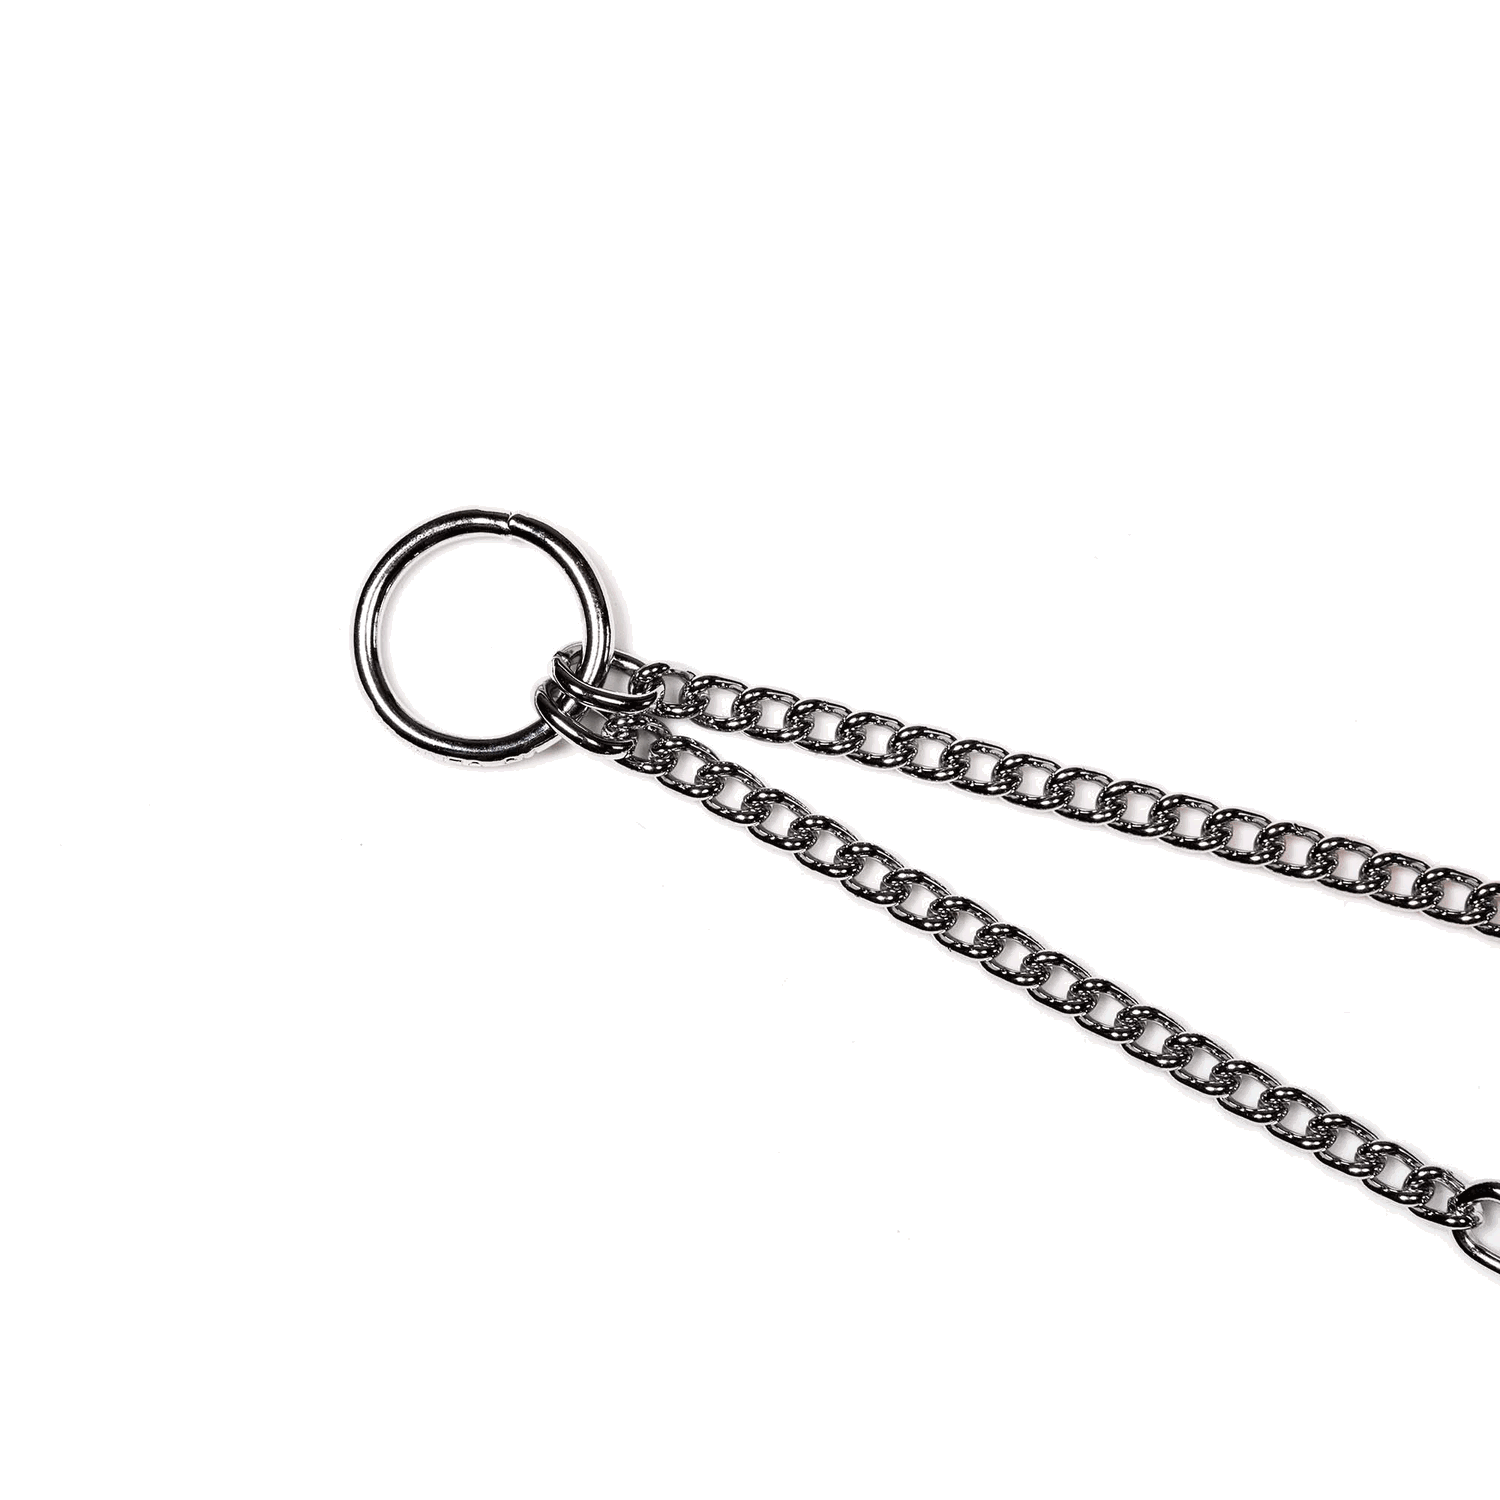 Koppelkette mit SPRENGER-Zangenhaken - Stahl verchromt, 1,5 mm, 38 cm | 51900_02_4.png | 1700898314